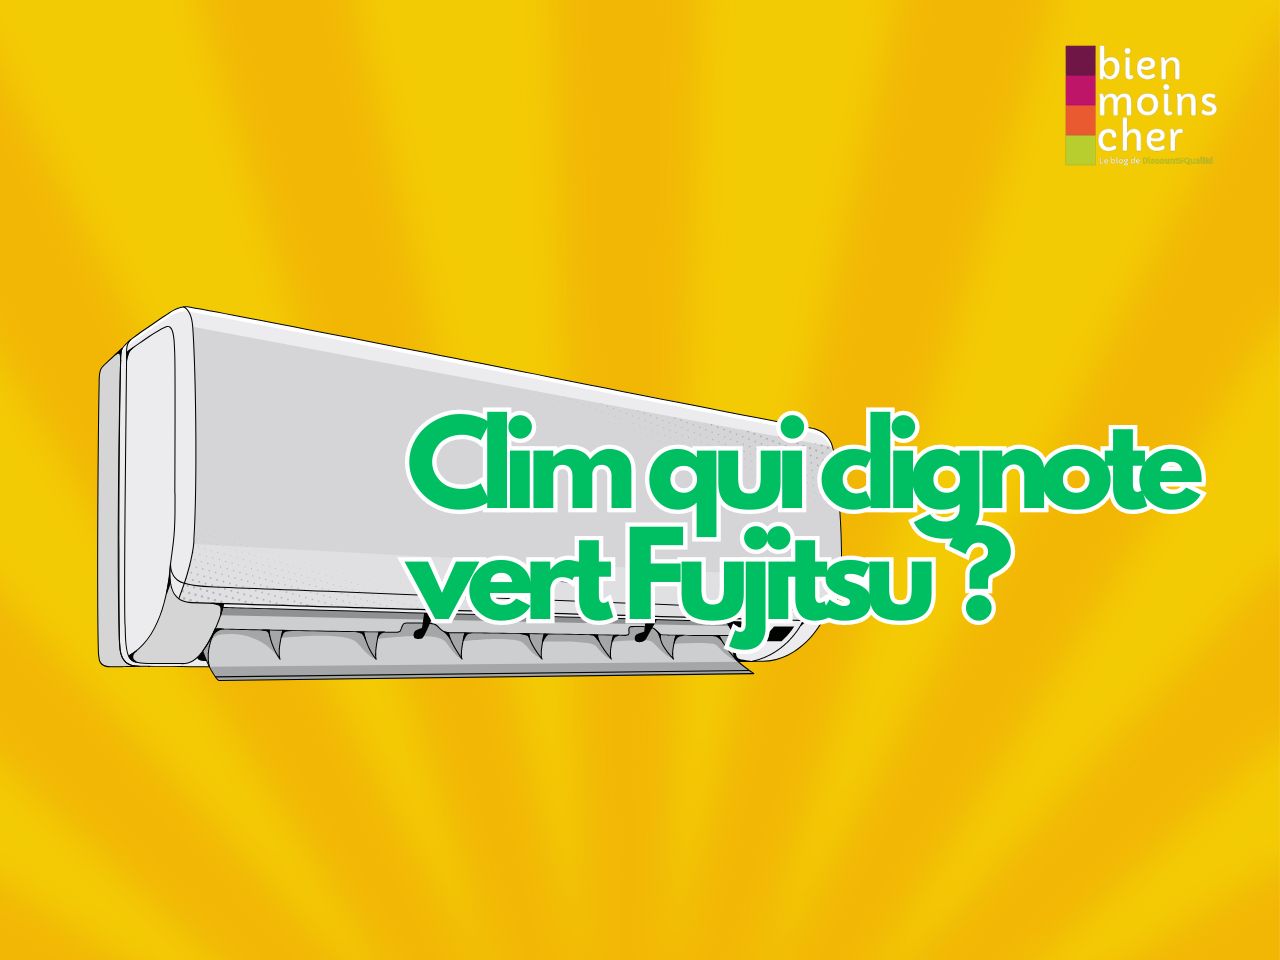 Clim qui clignote vert Fujitsu, pourquoi ?